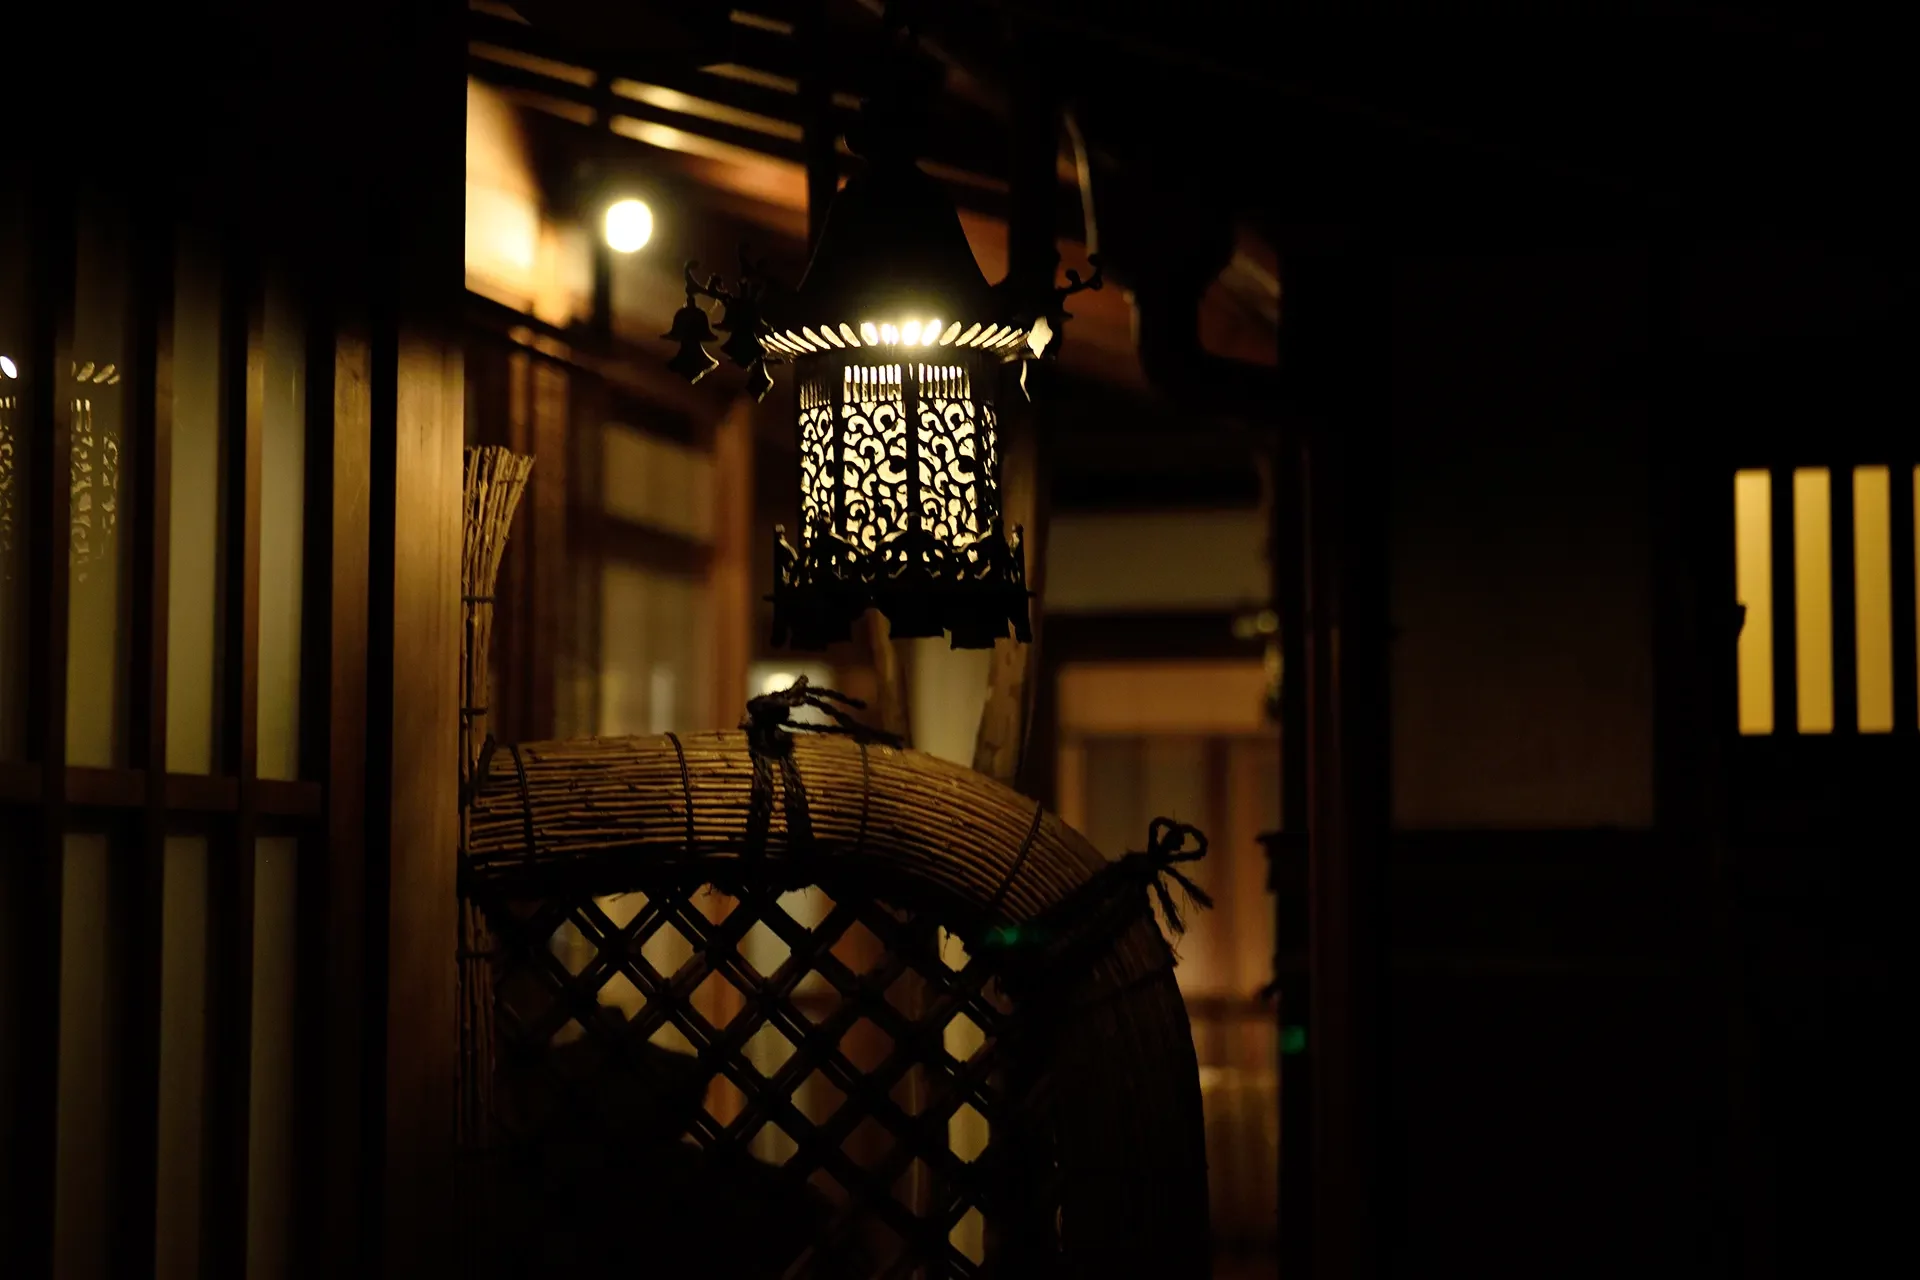 Japanische Lampe hängt von Vordach